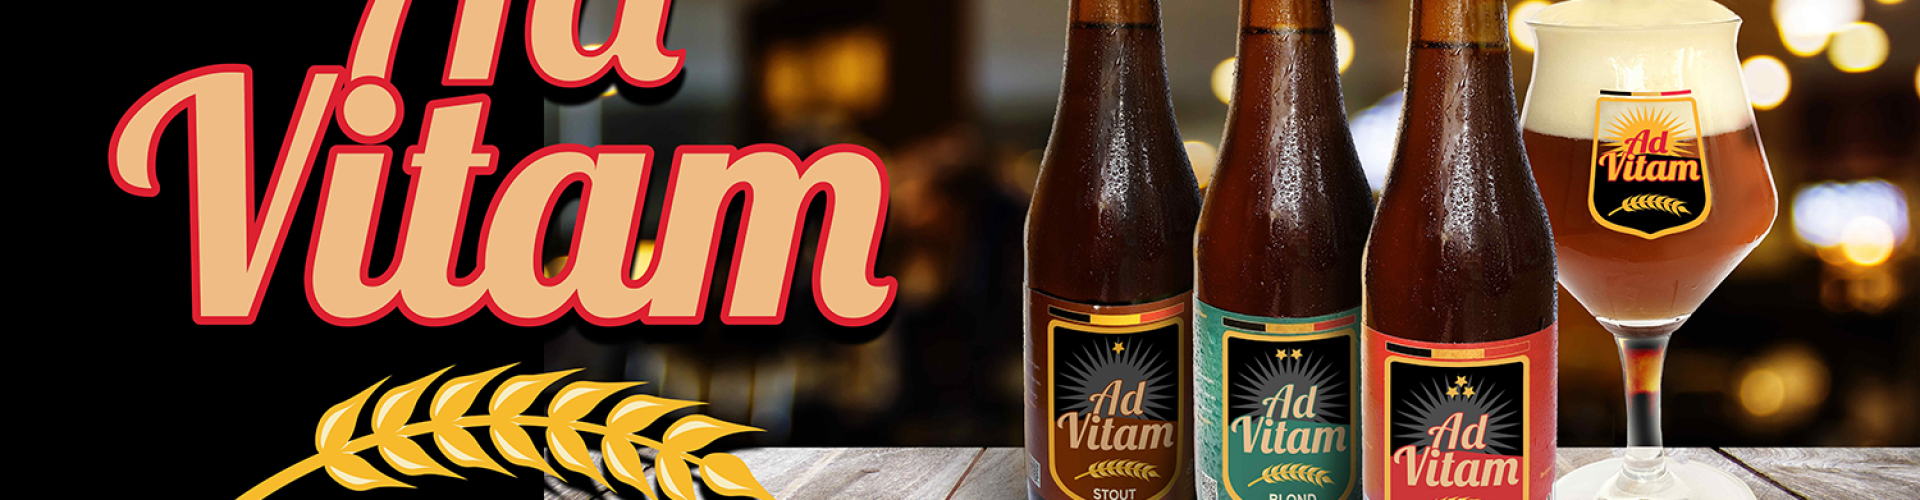 Ad Vitam Premium Bieren